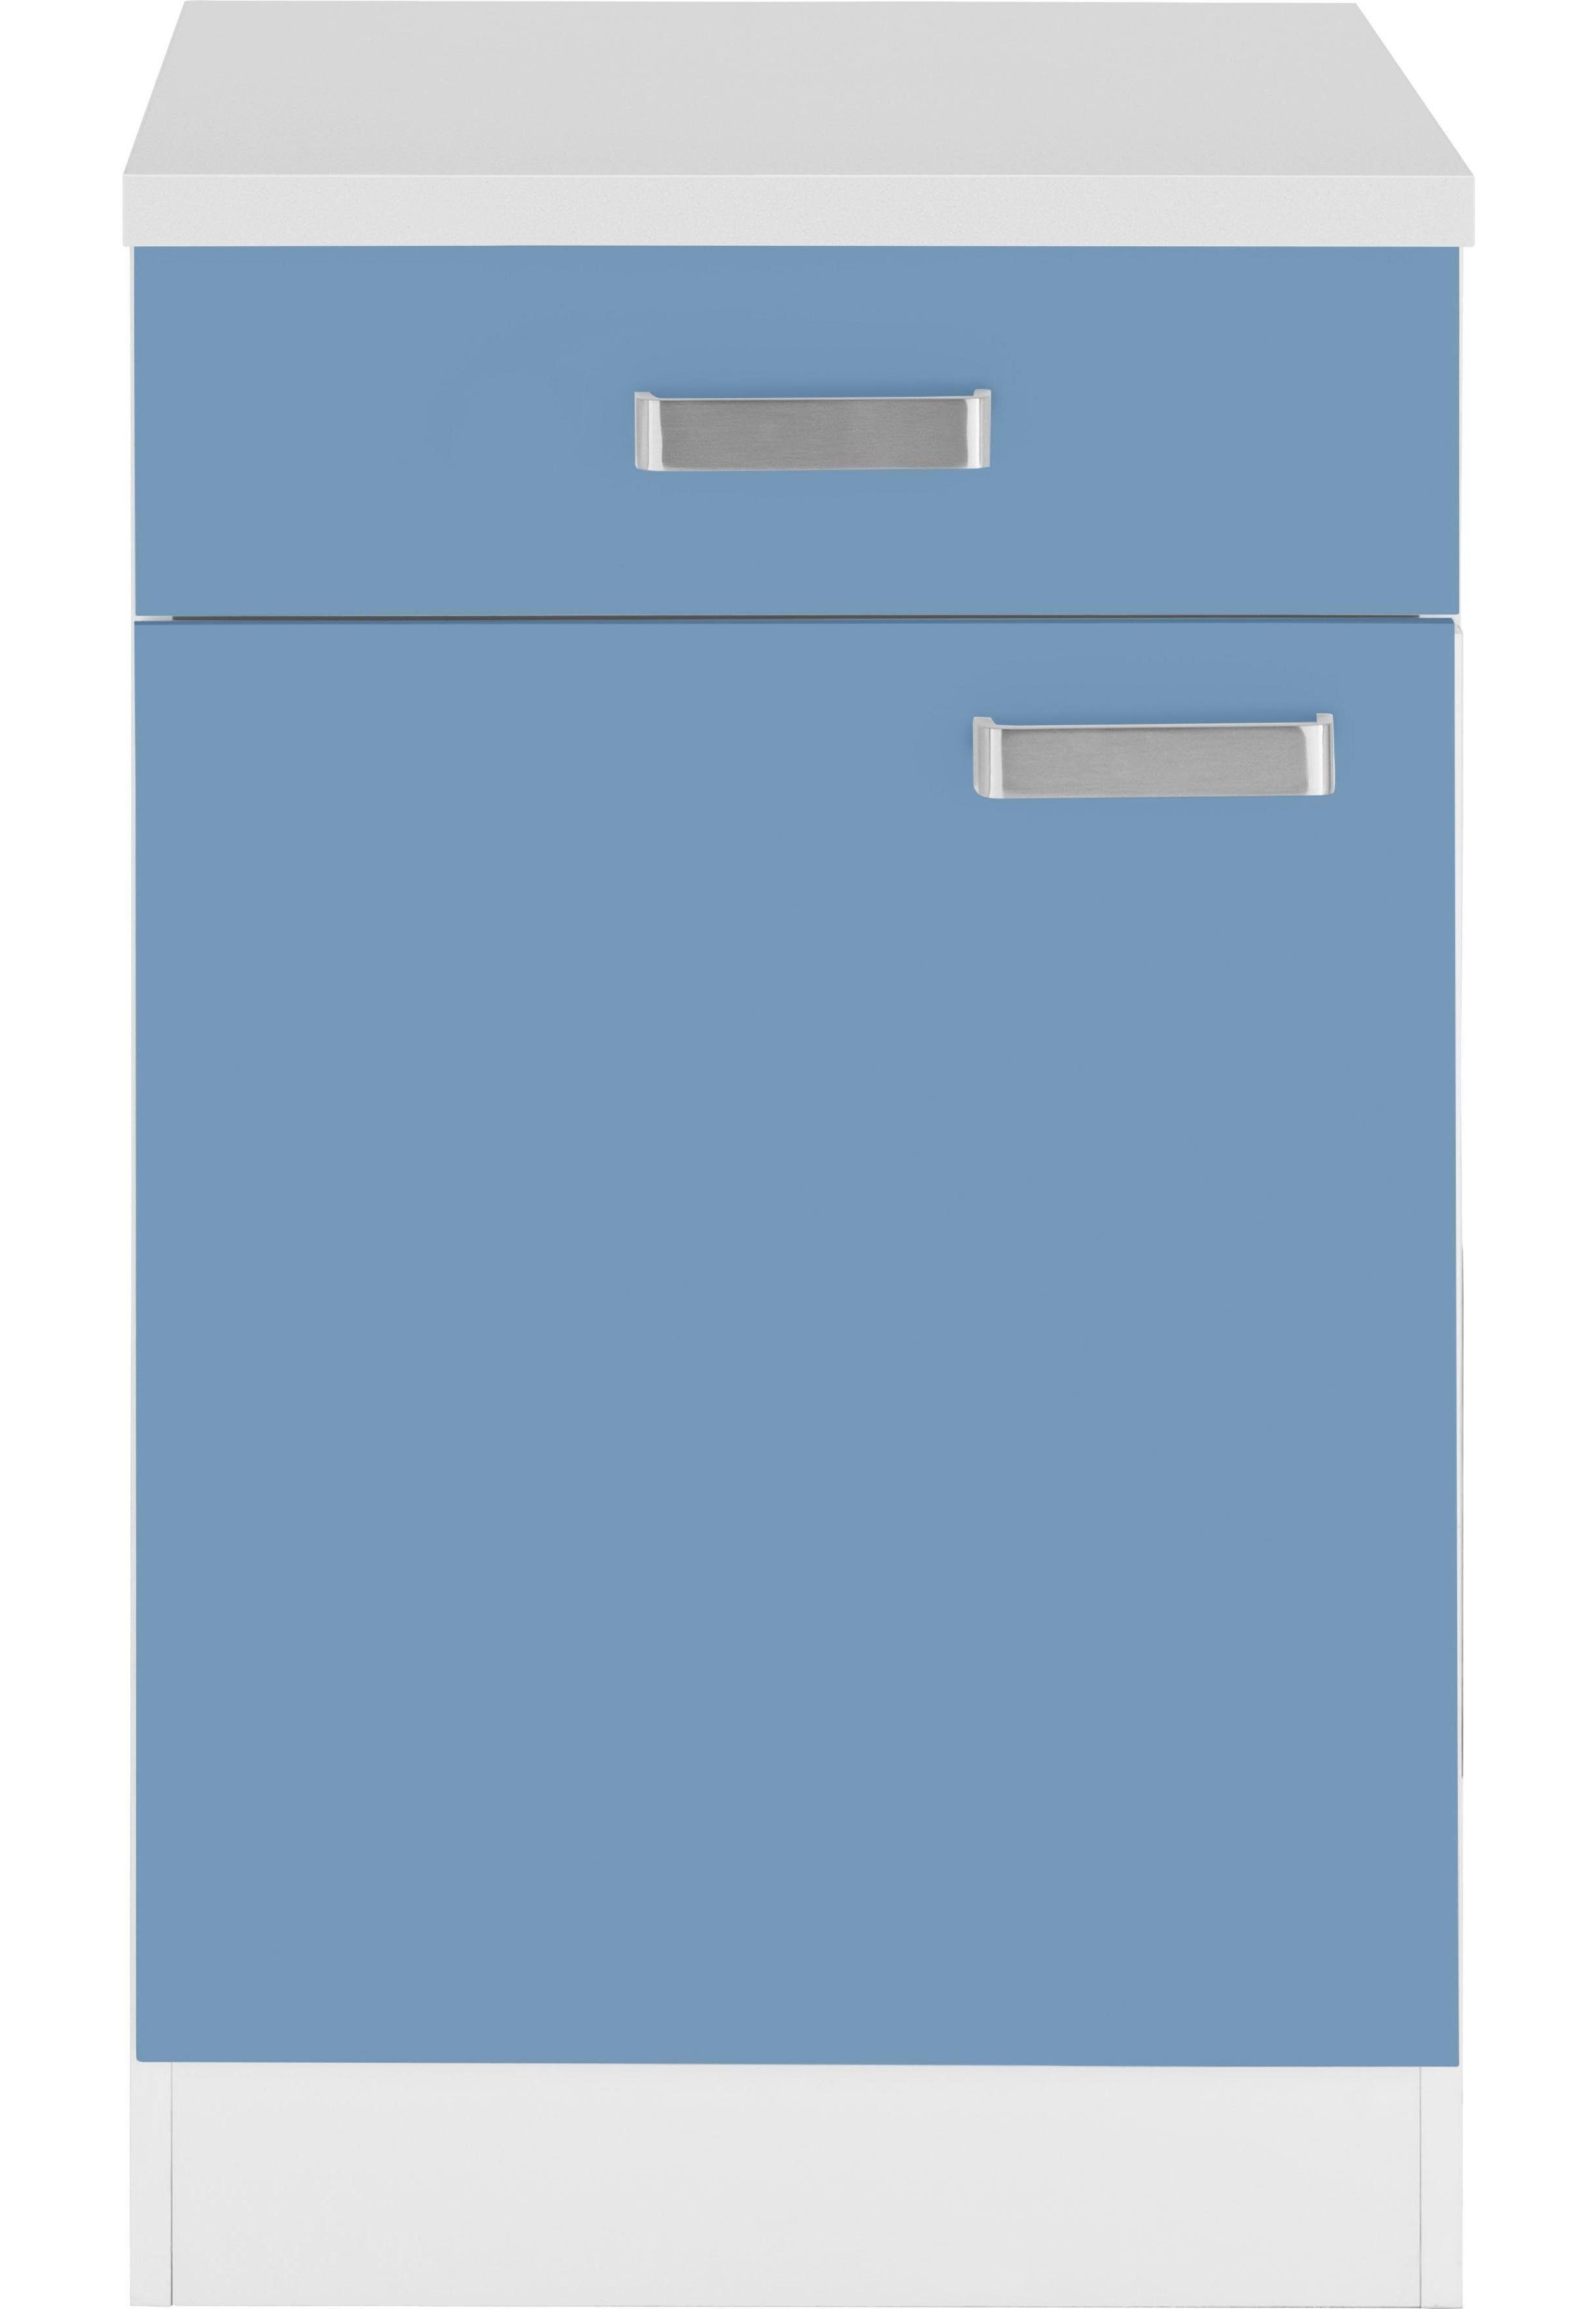 wiho Küchen Unterschrank Husum 50 cm breit himmelblau/weiß